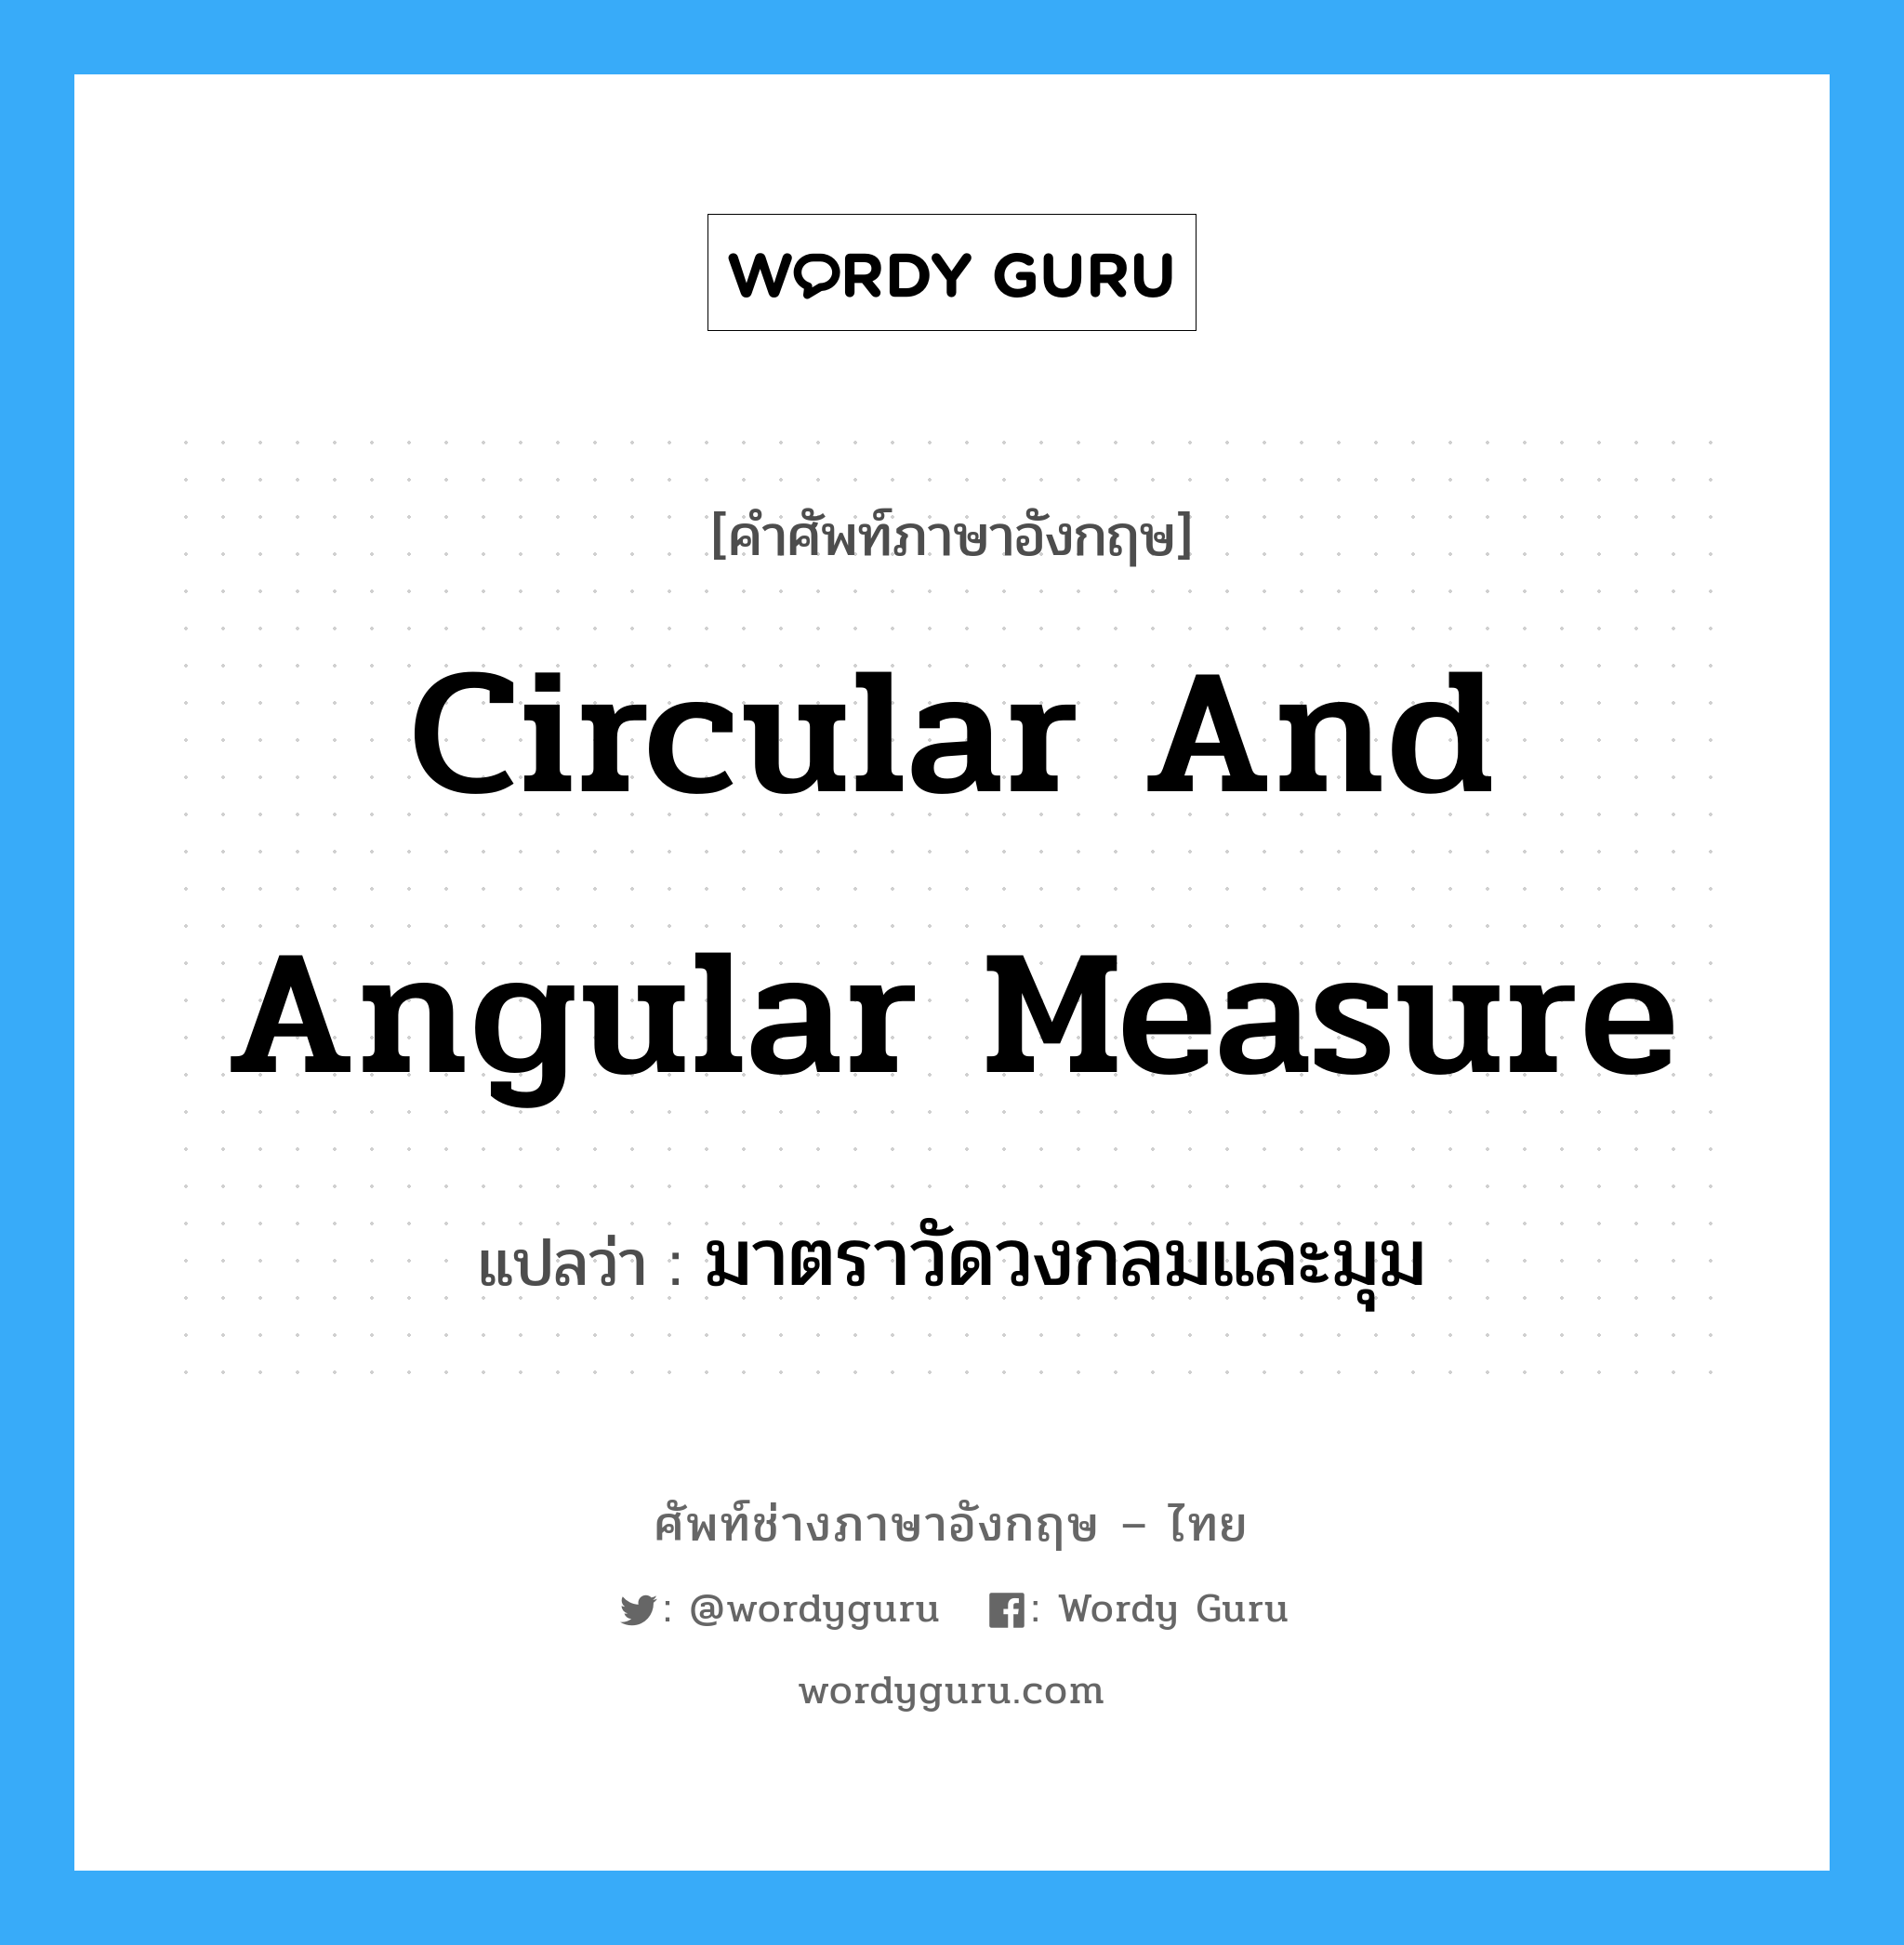 มาตราวัดวงกลมและมุม ภาษาอังกฤษ?, คำศัพท์ช่างภาษาอังกฤษ - ไทย มาตราวัดวงกลมและมุม คำศัพท์ภาษาอังกฤษ มาตราวัดวงกลมและมุม แปลว่า circular and angular measure